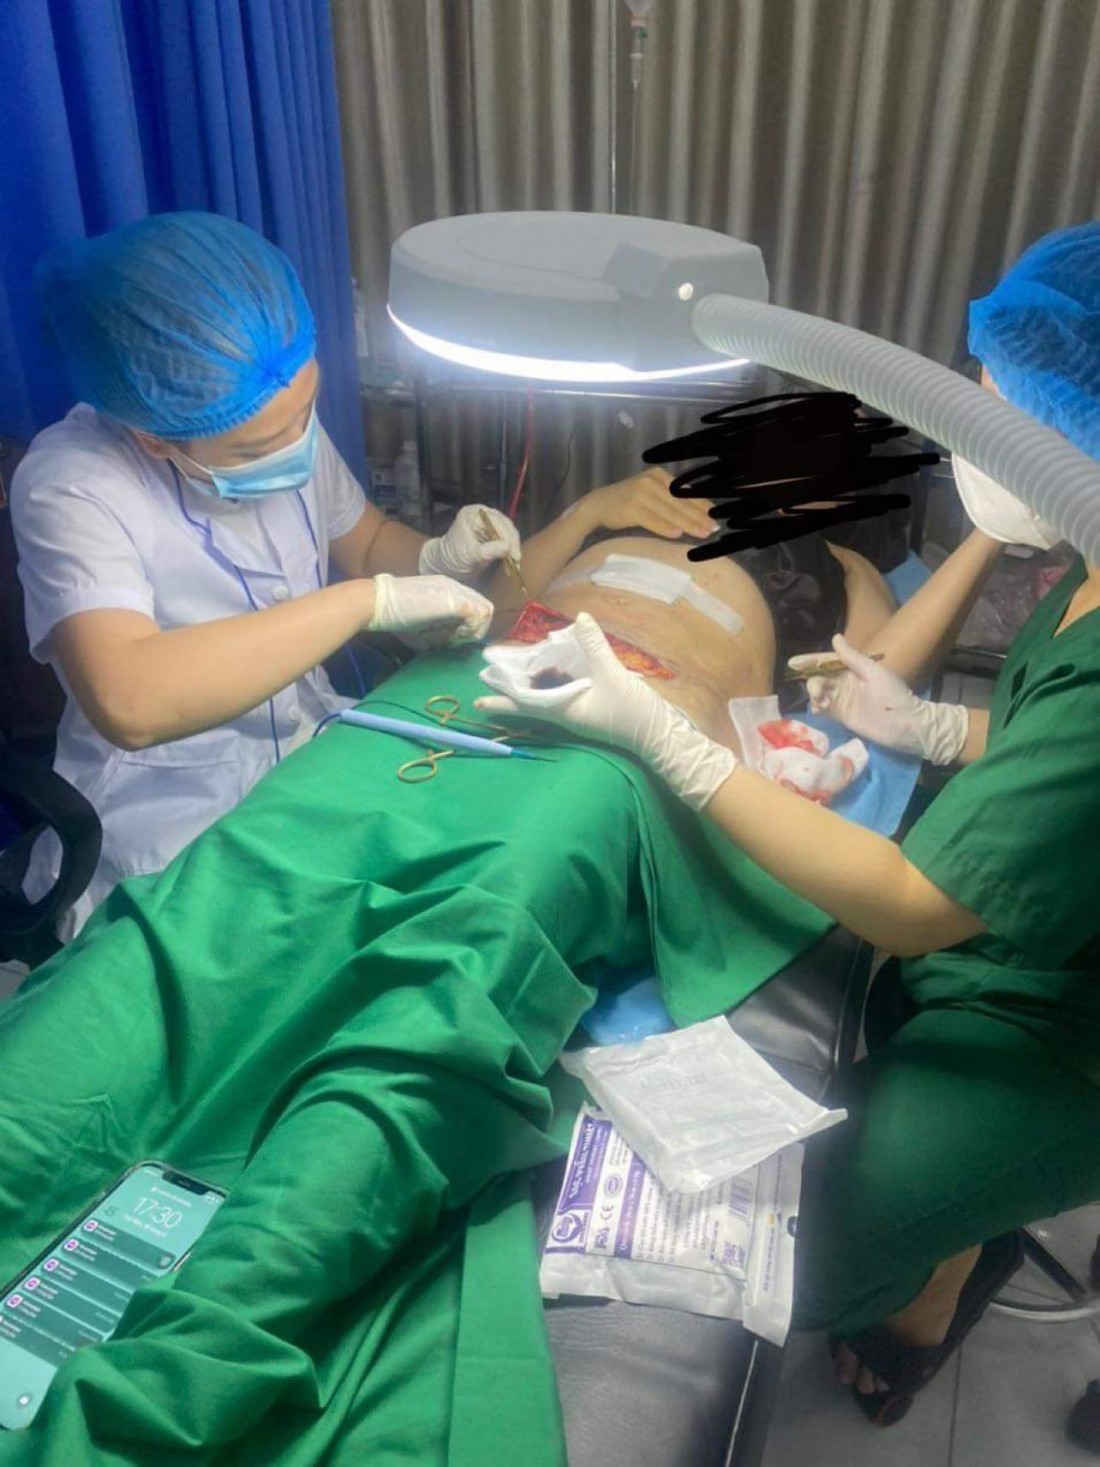 Hình ảnh nữ bệnh nhân được phẫu thuật hút mỡ tại cơ sở mạo danh Bệnh viện Đa khoa Hà Nội.